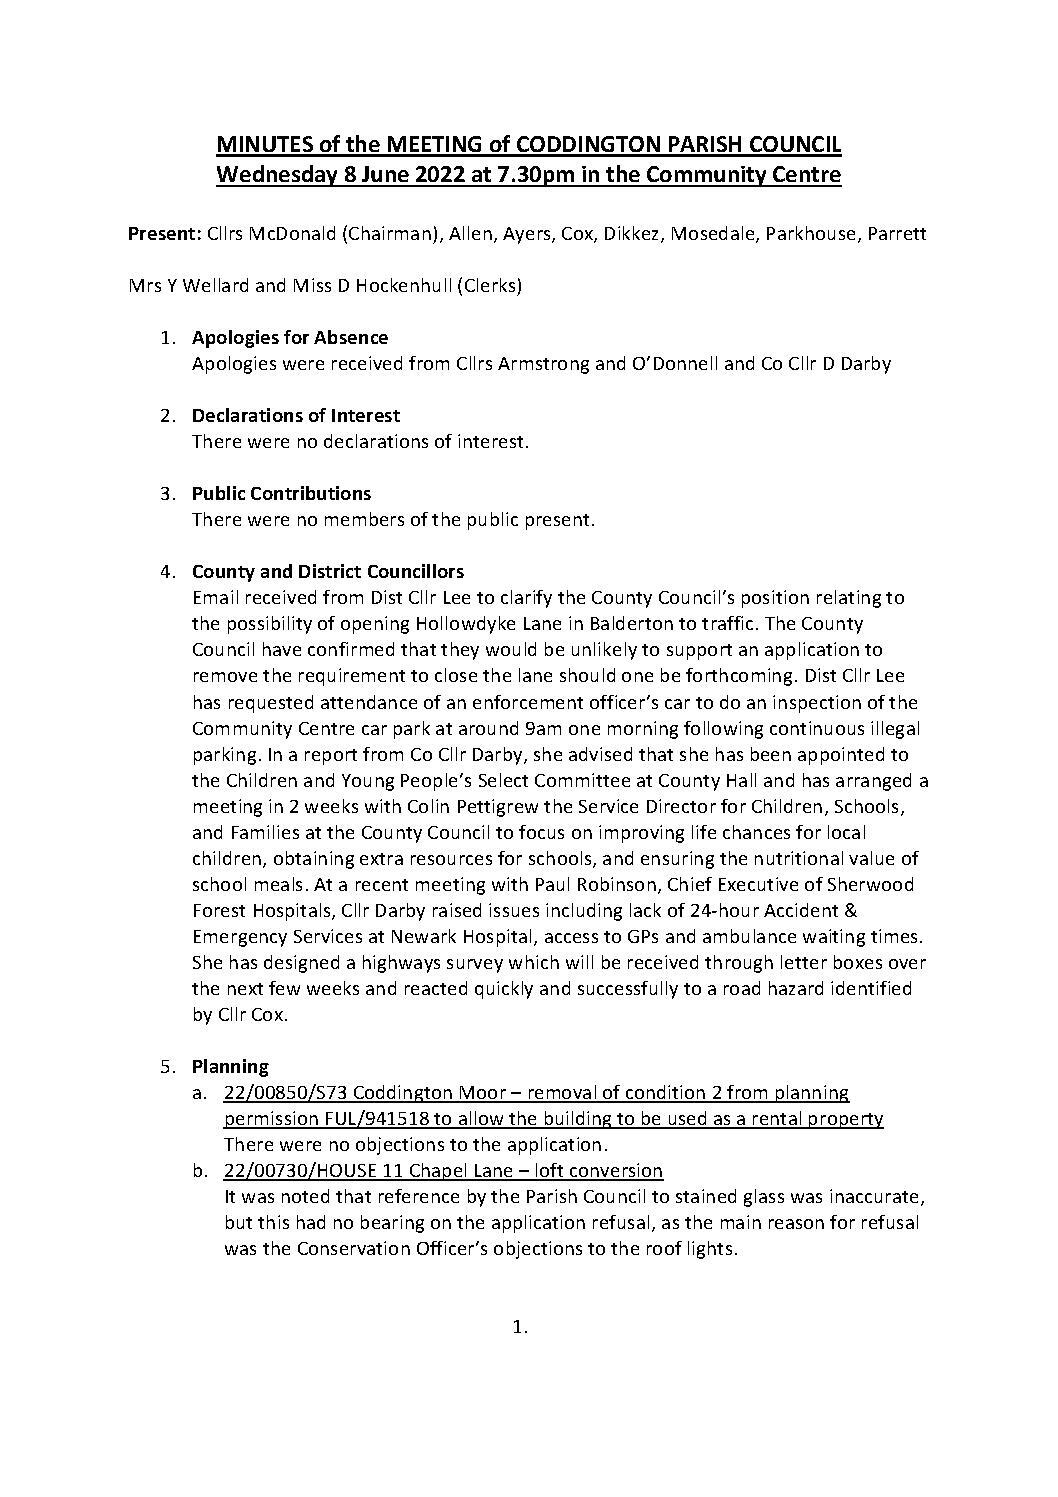 Parish Council Meeting 8 June 2022 Minutes